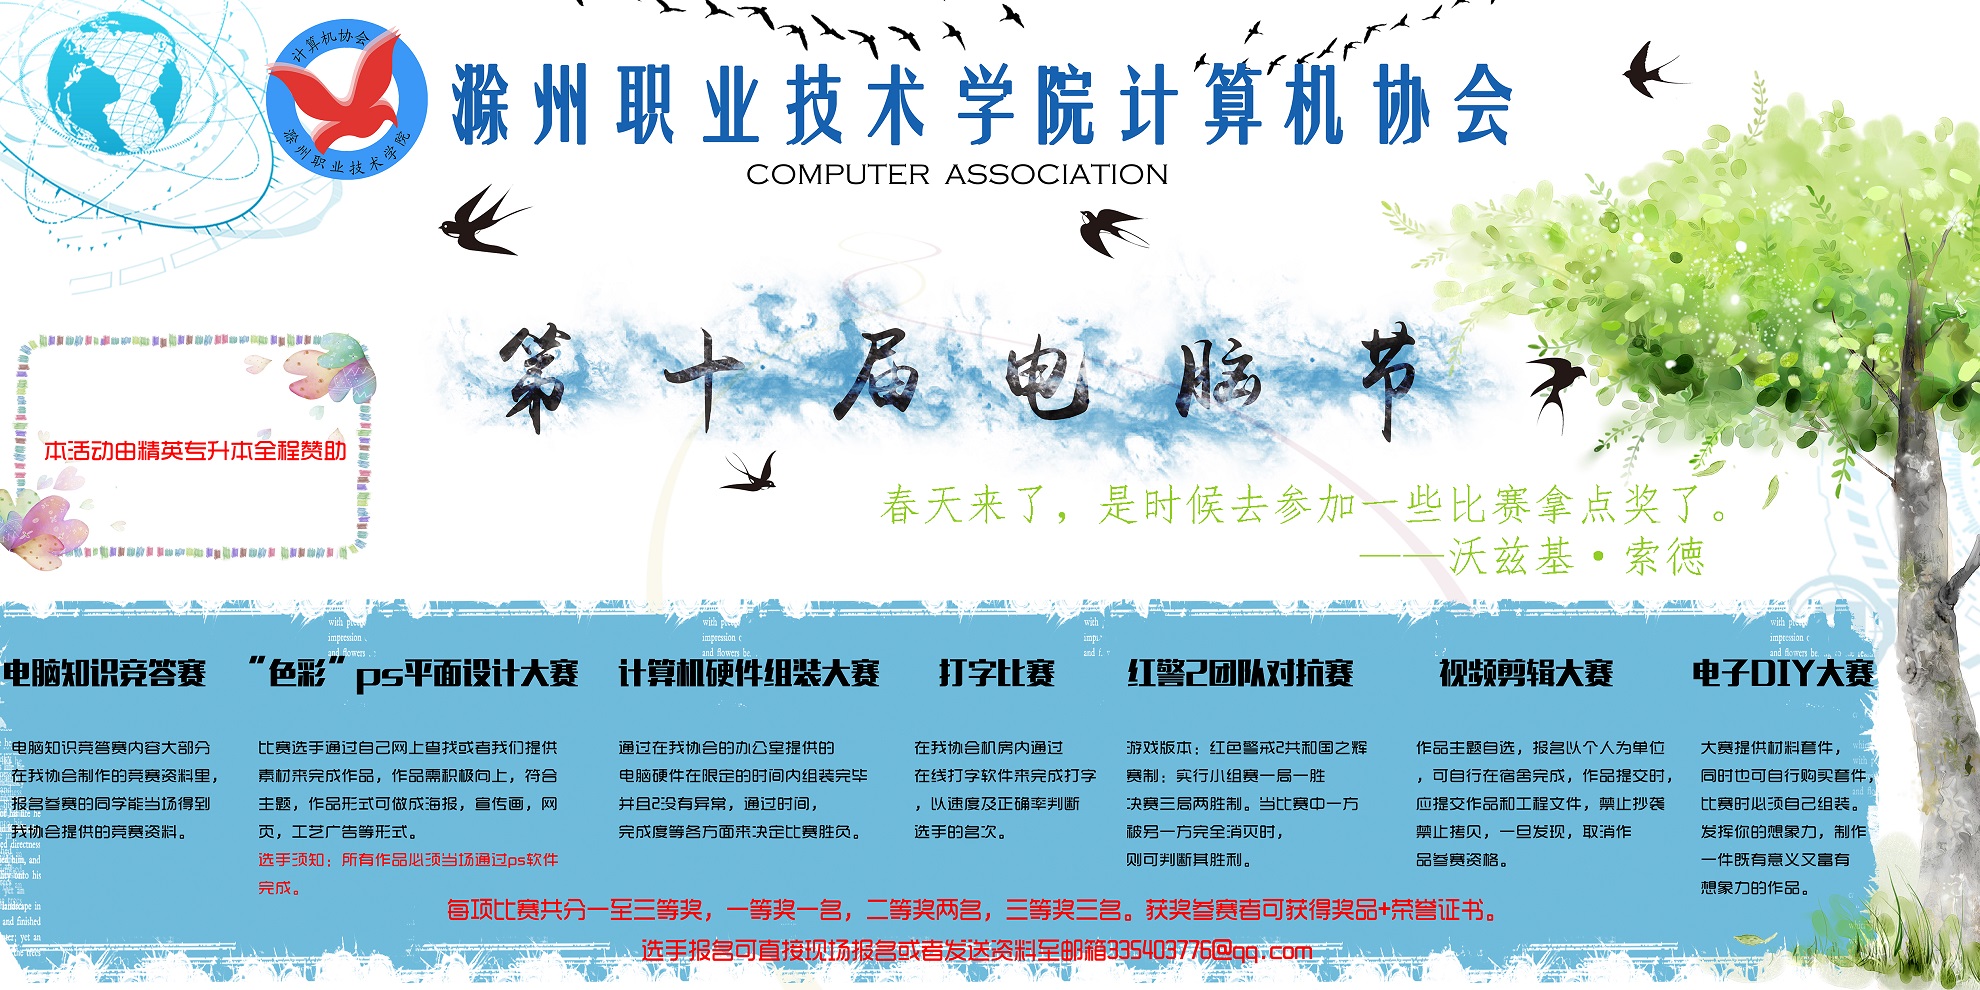 计算机协会电脑节十周年暨第七届社团文化节前瞻